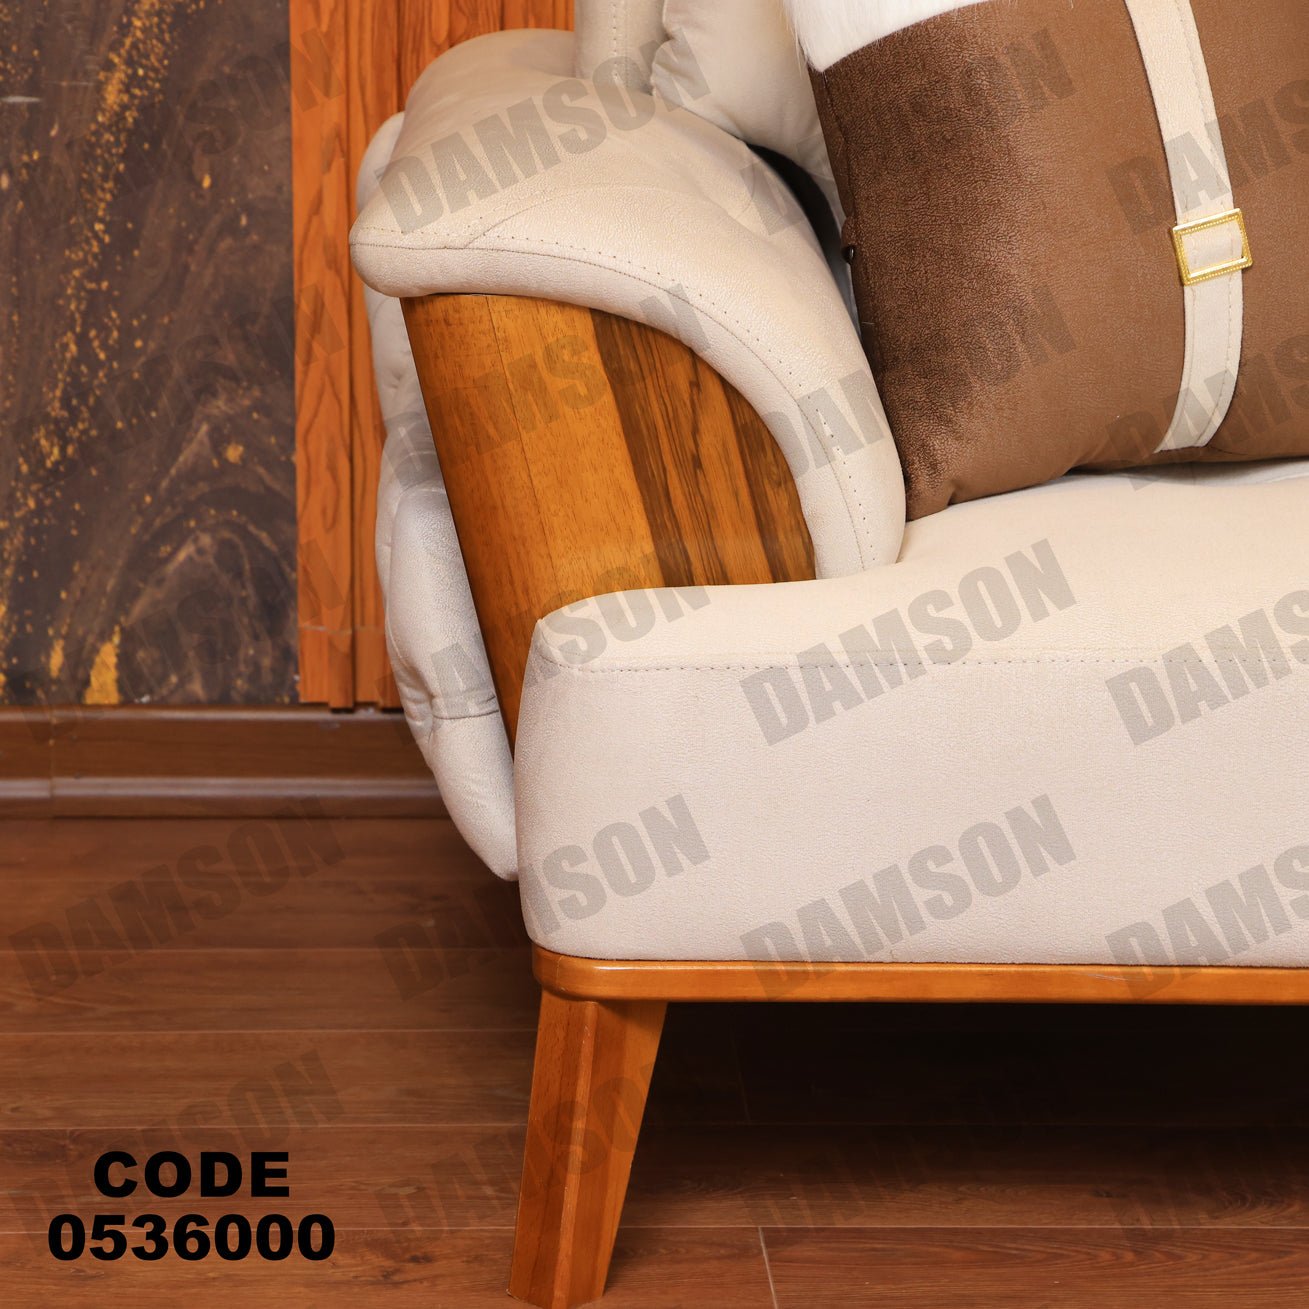 انترية 360 - Damson Furnitureانترية 360